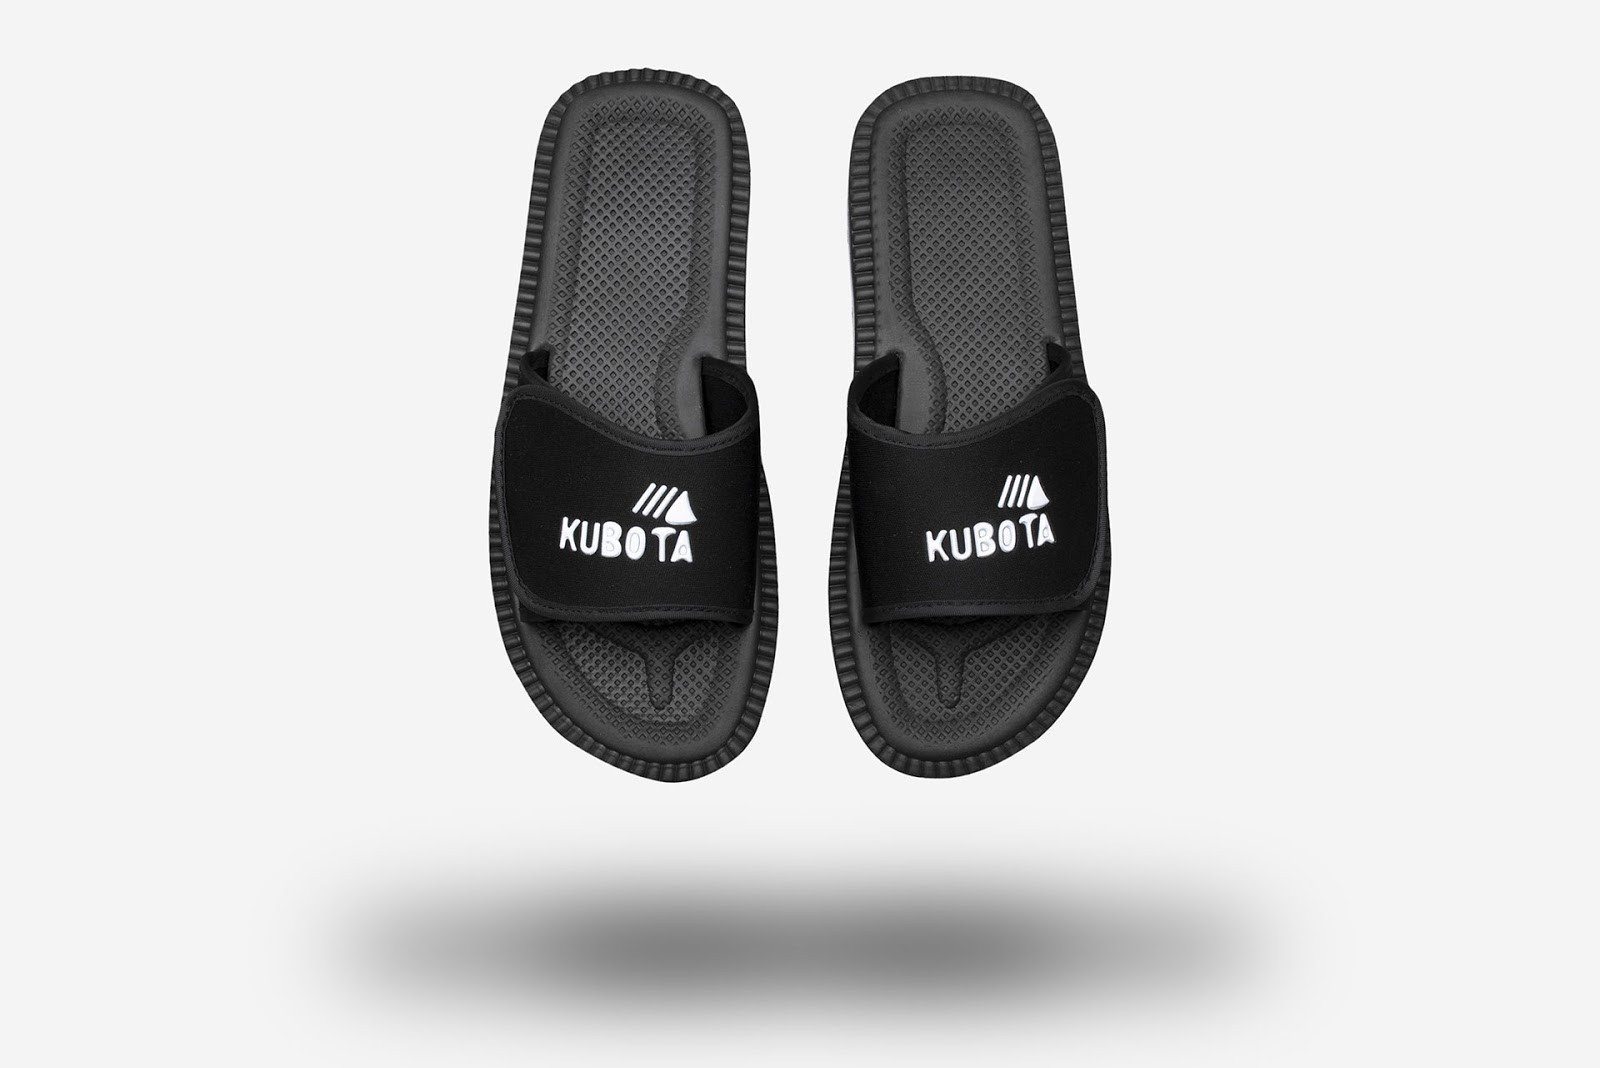 Kubota Rzep: replica of the original black Kubota slide sandals